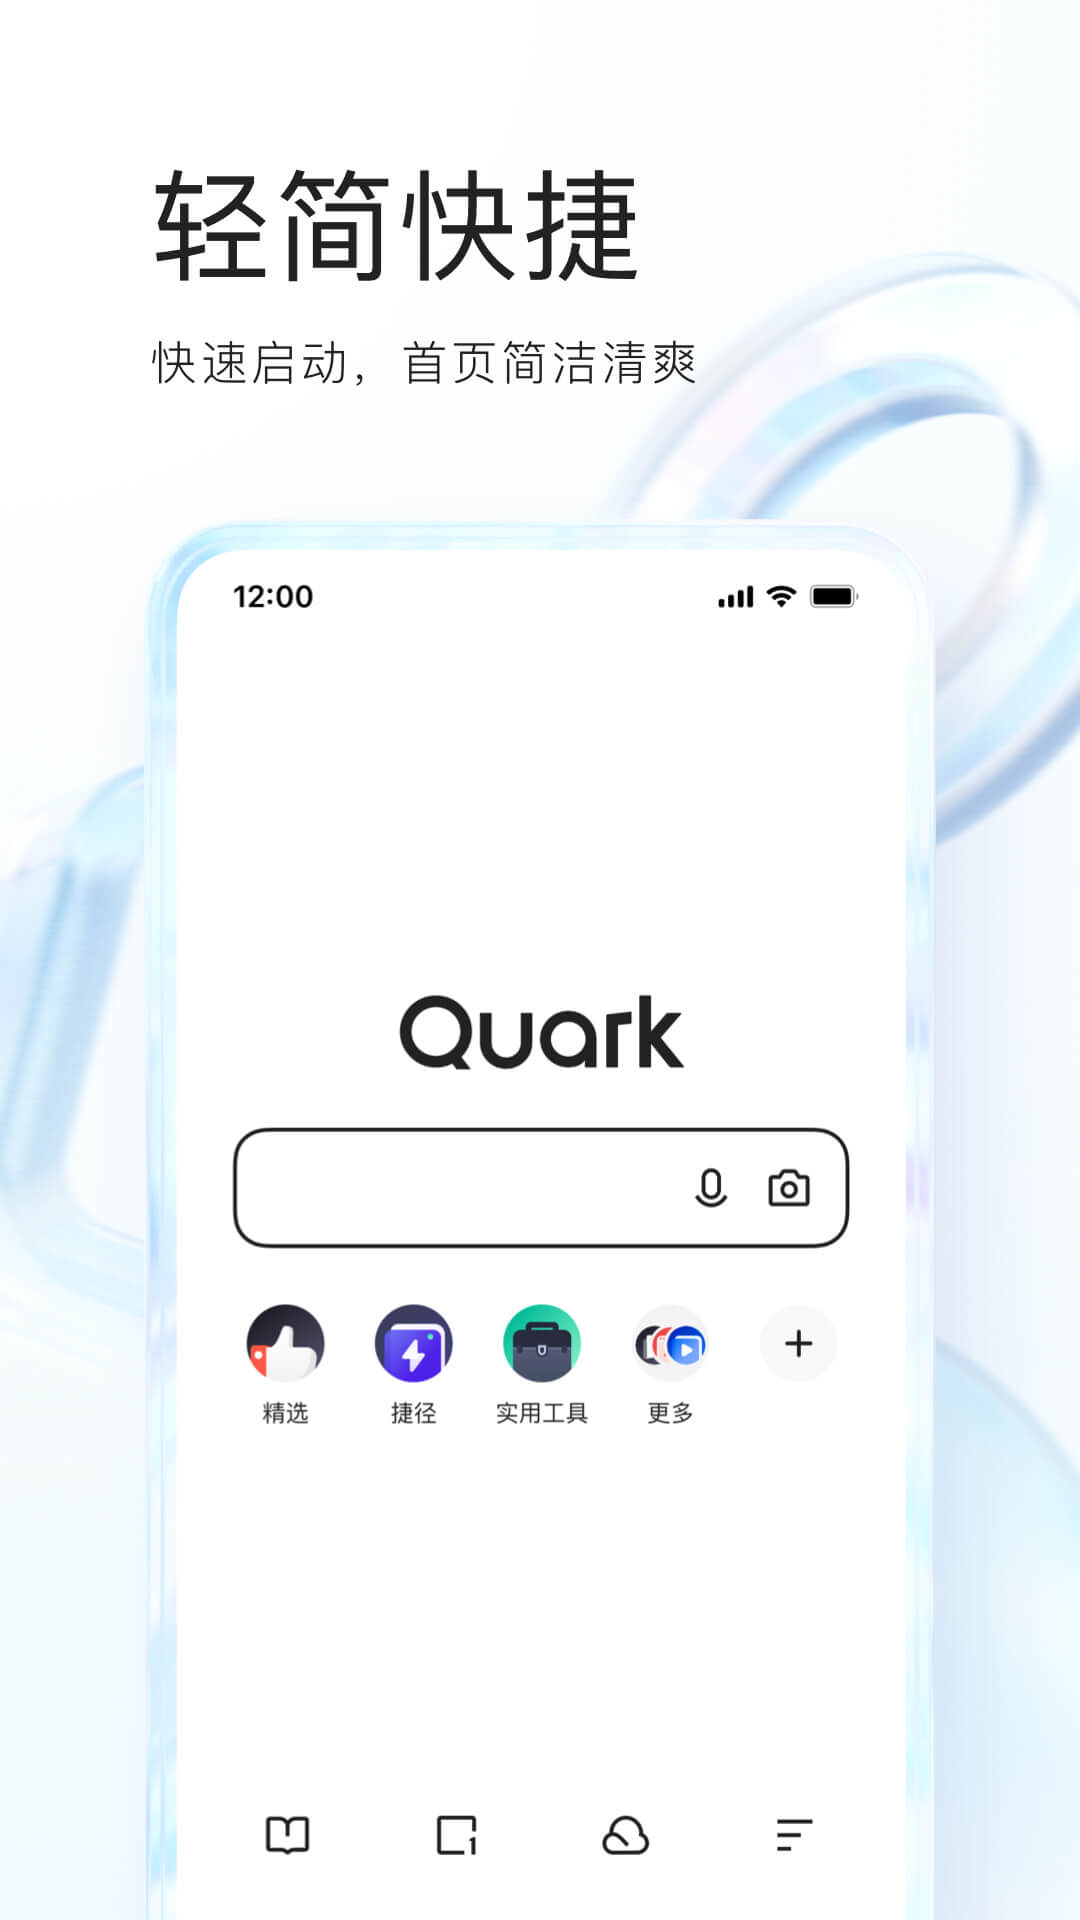 夸克app下载安卓